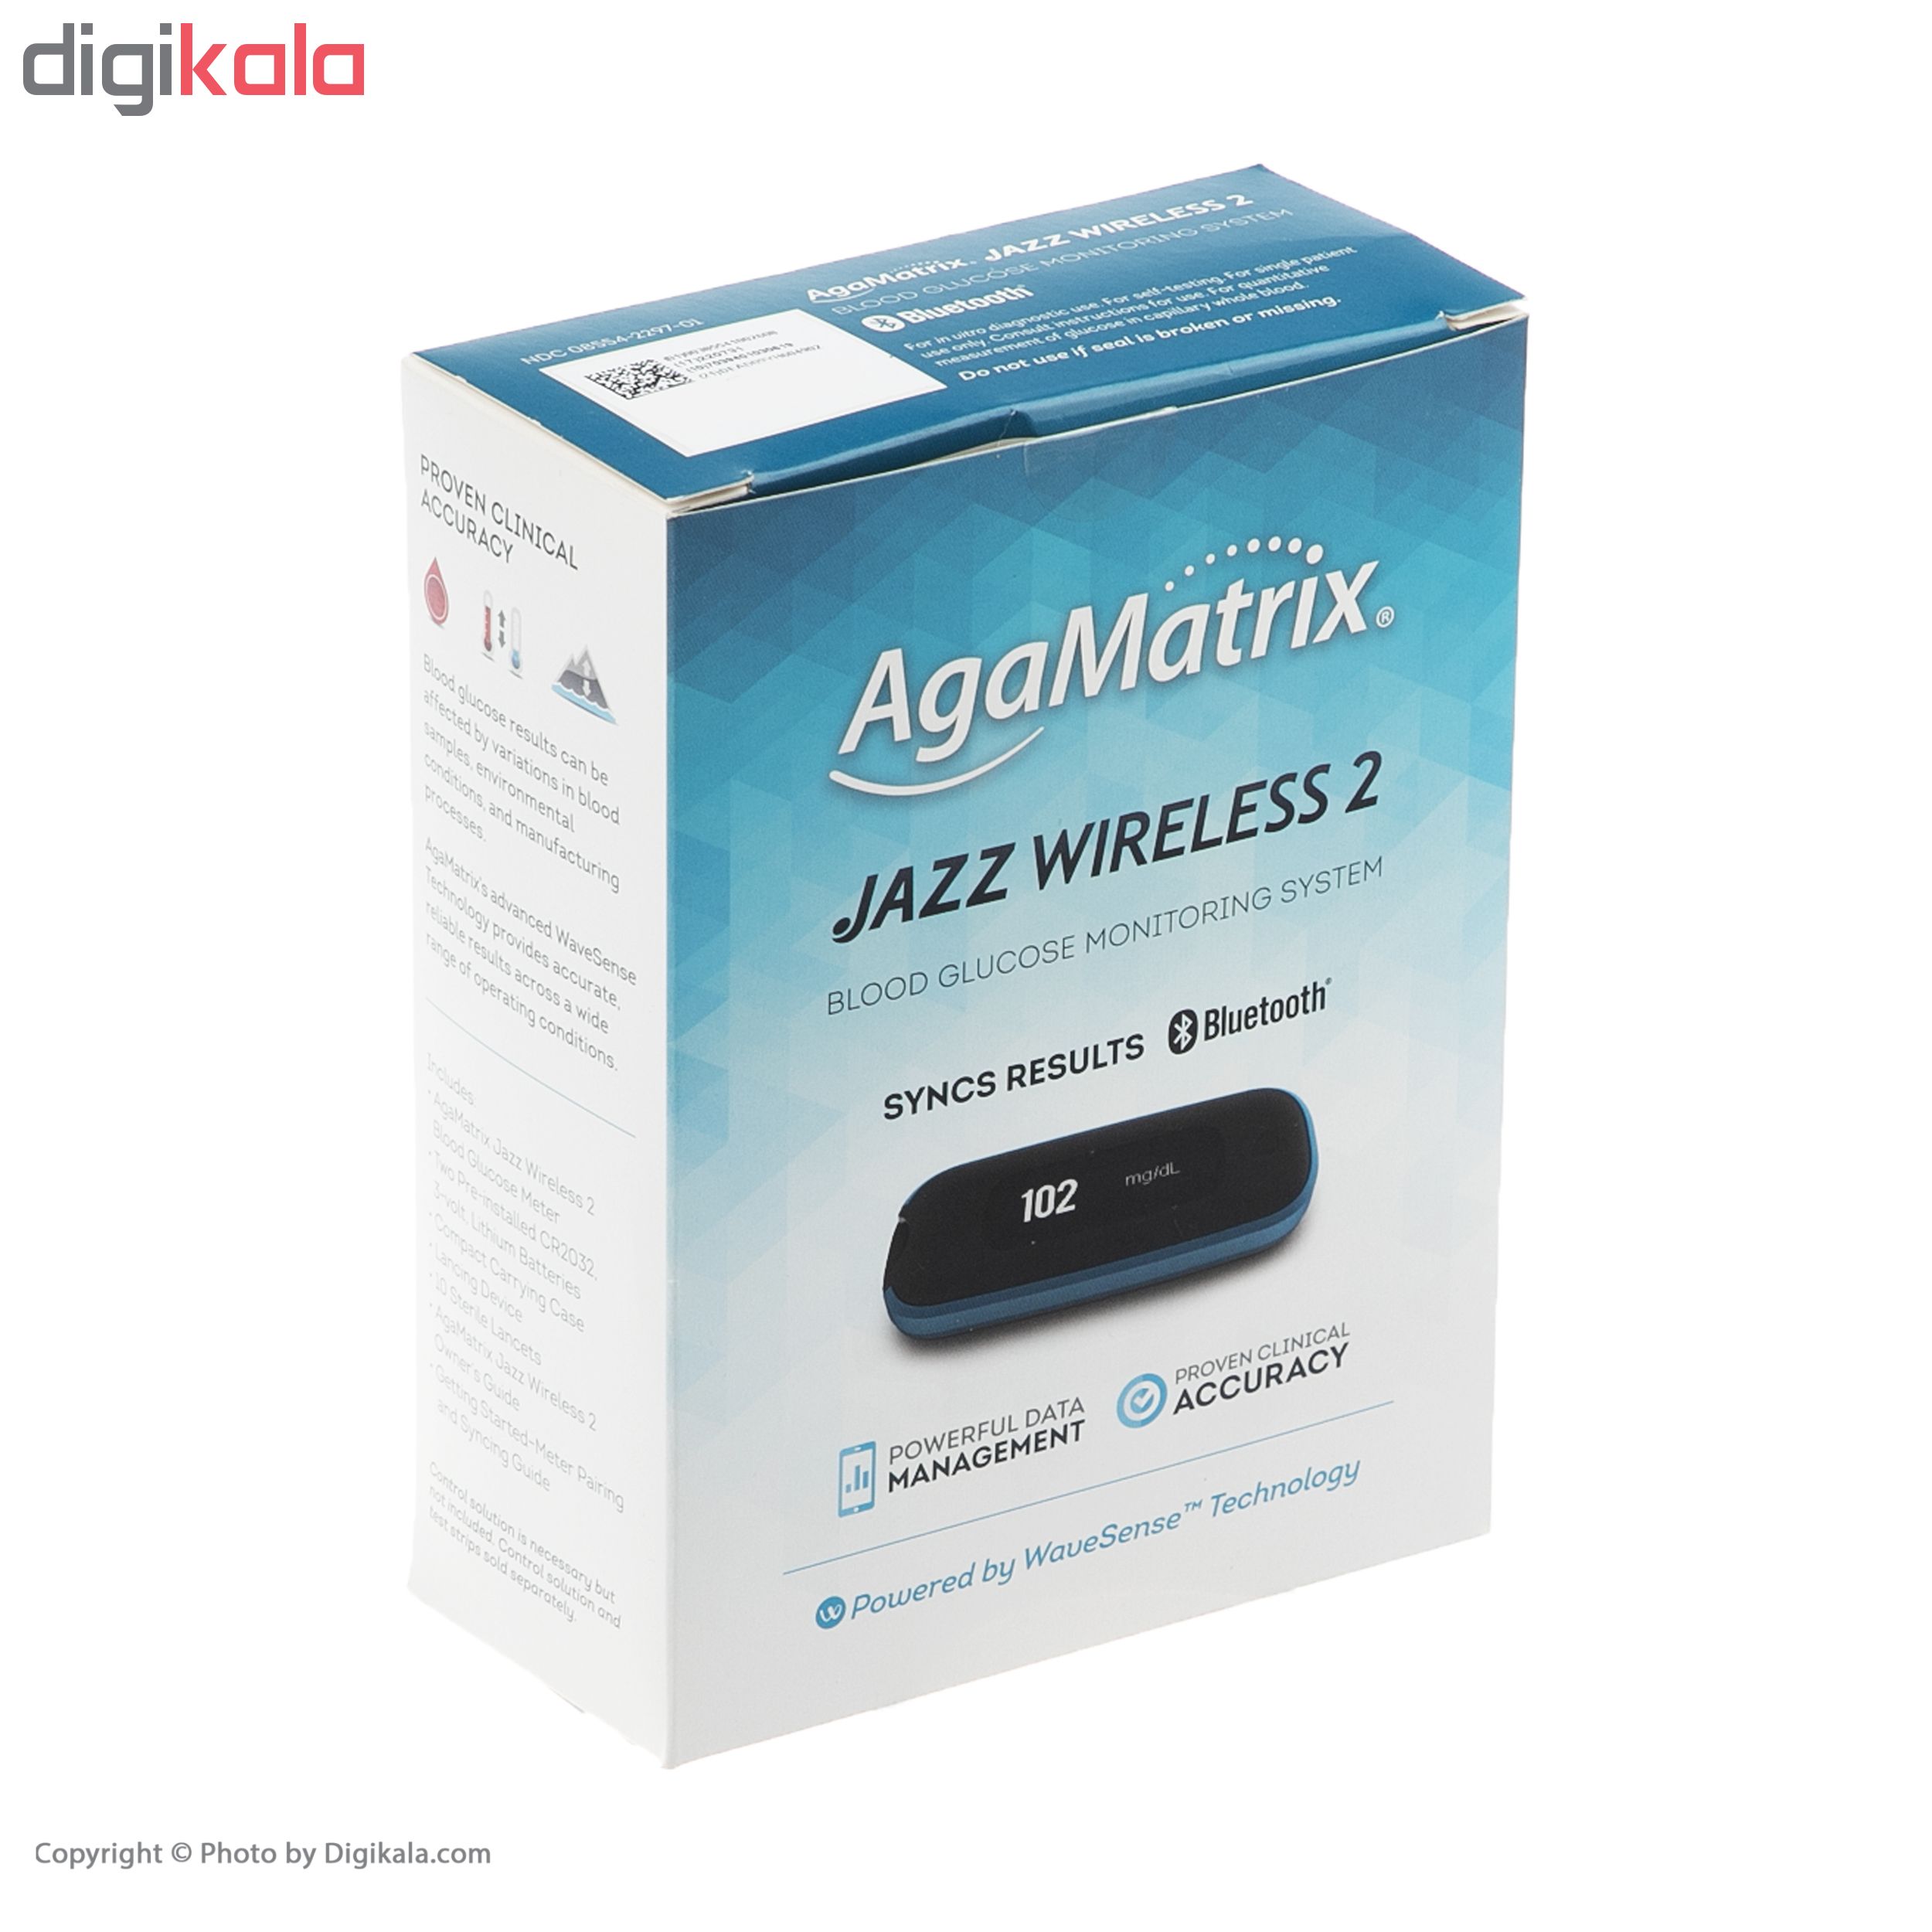 دستگاه تست قندخون آگاماتریکس مدل Jazz Wireless 2 به همراه نوار تست قندخون بسته 50 عددی و سوزن لانست بسته 100 عددی